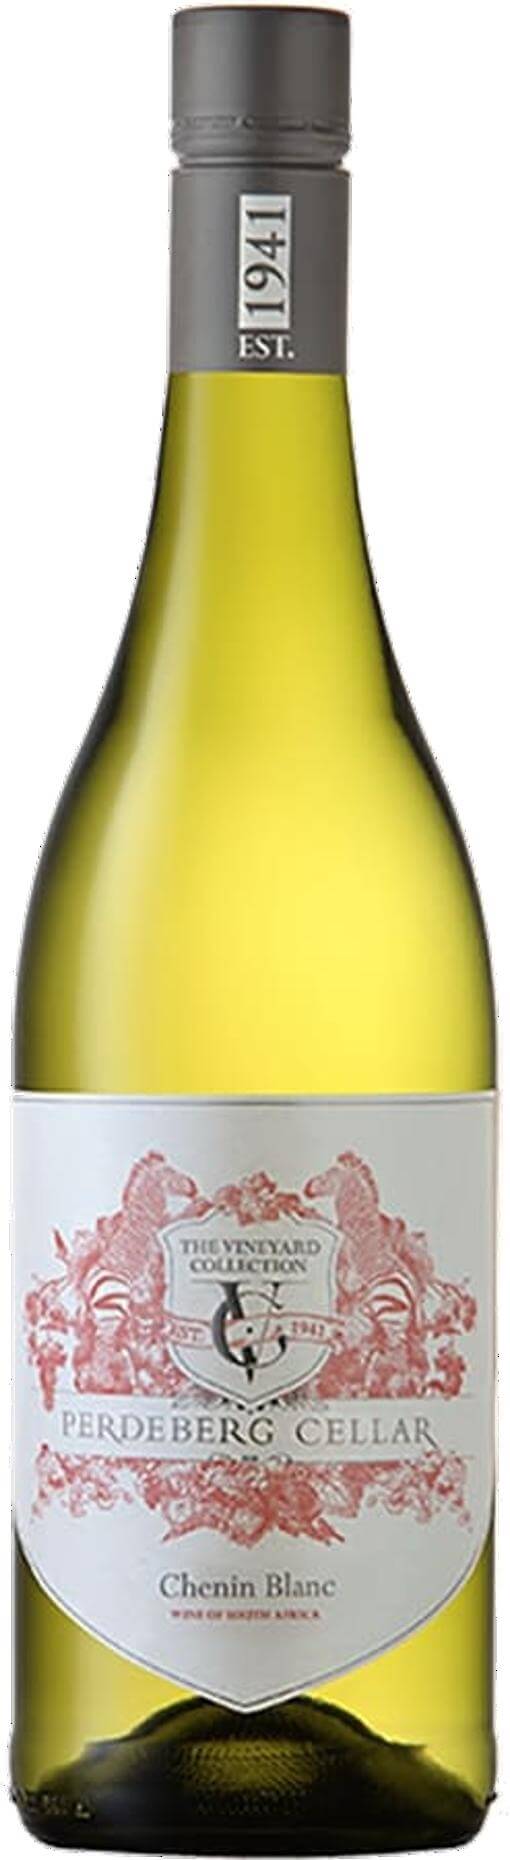 Perdeberg The Vineyard Collection Chenin Blanc (Weißwein, Südafrika, Paarl)  | Curry Premium Wines oHG